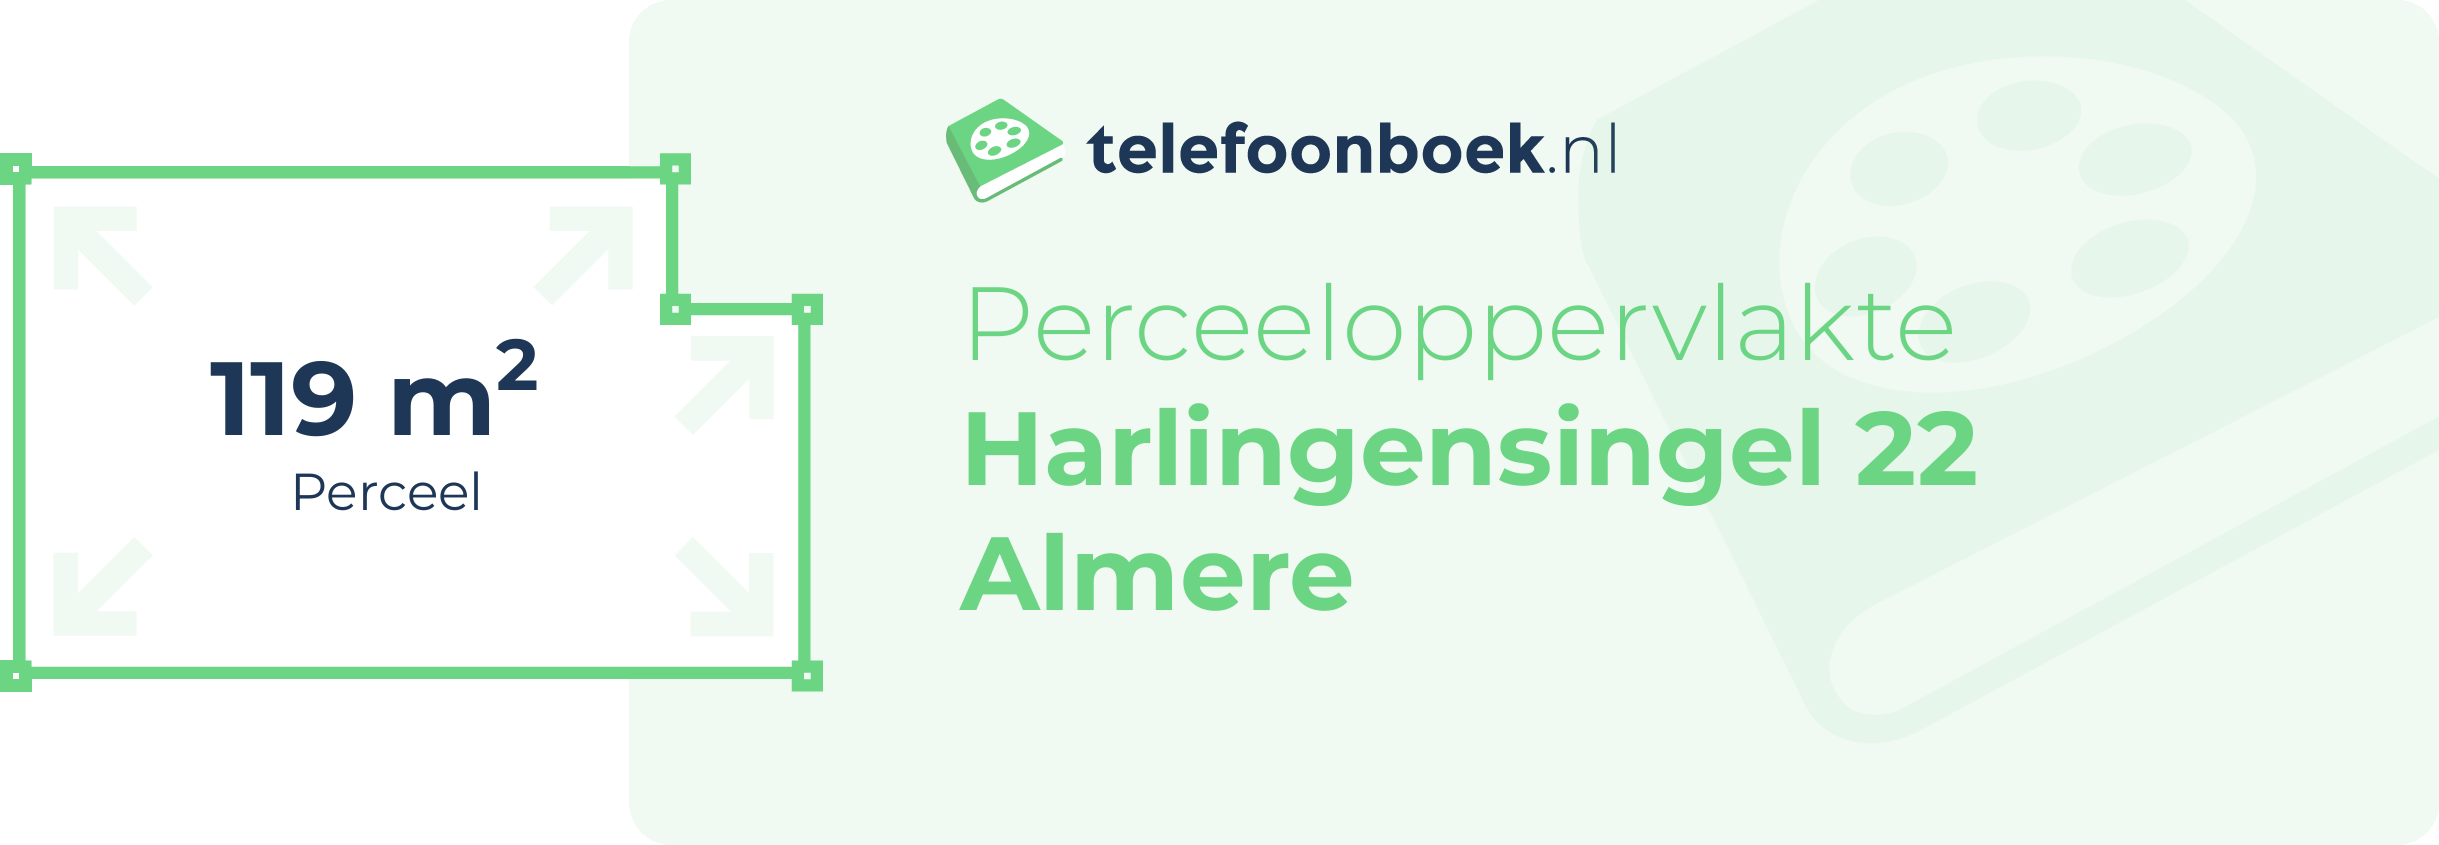 Perceeloppervlakte Harlingensingel 22 Almere